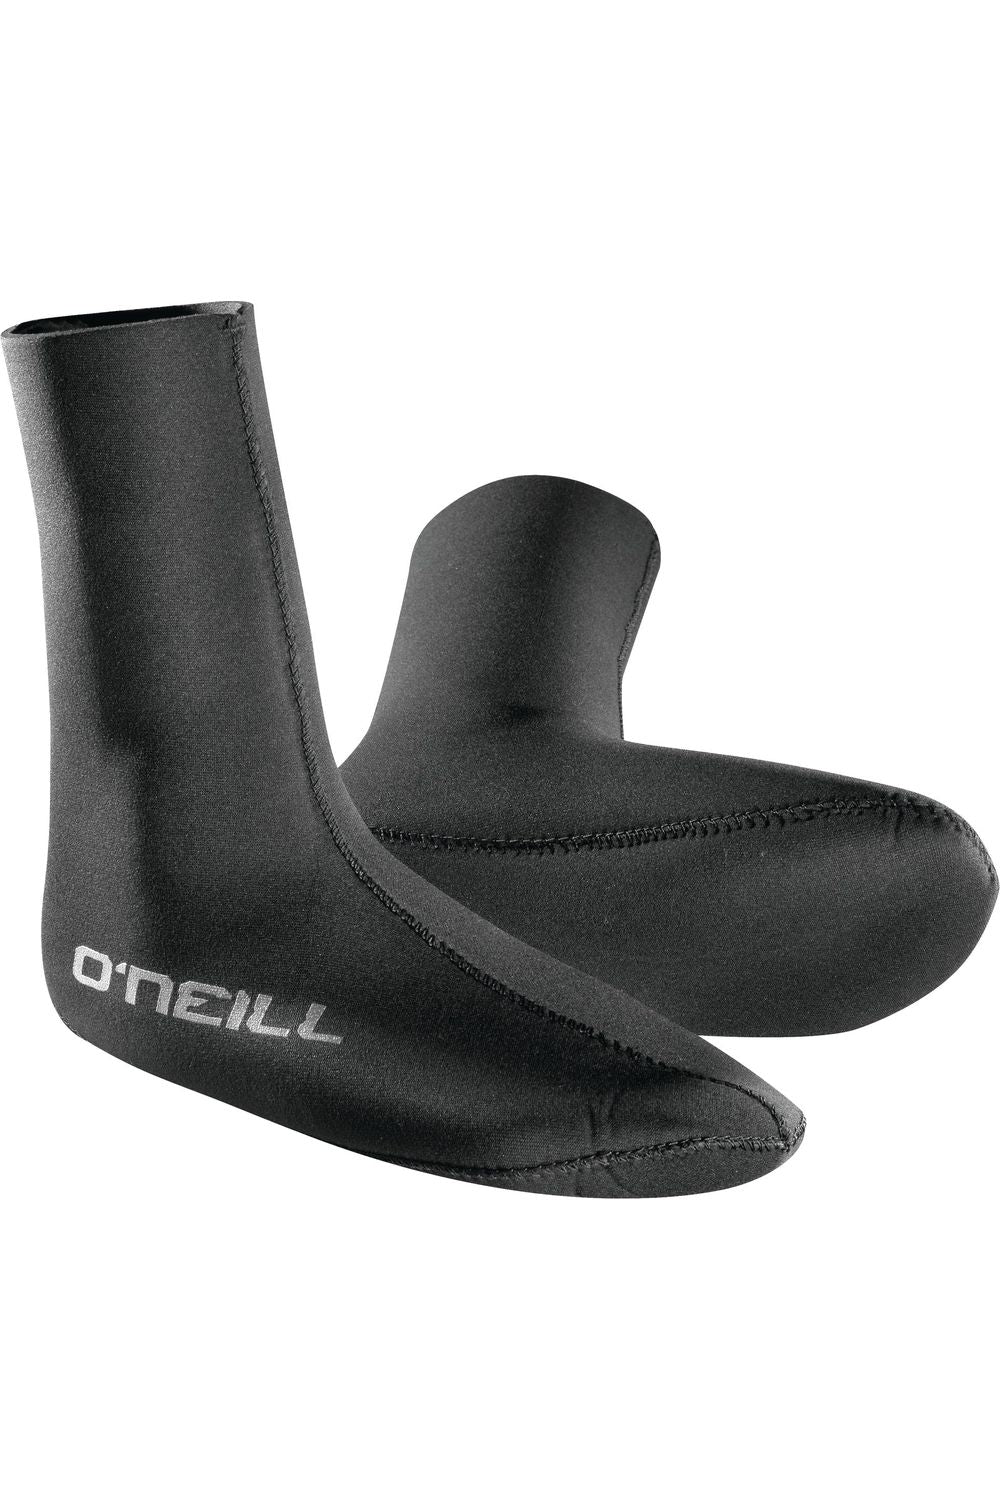 O'Neill Heat Sock